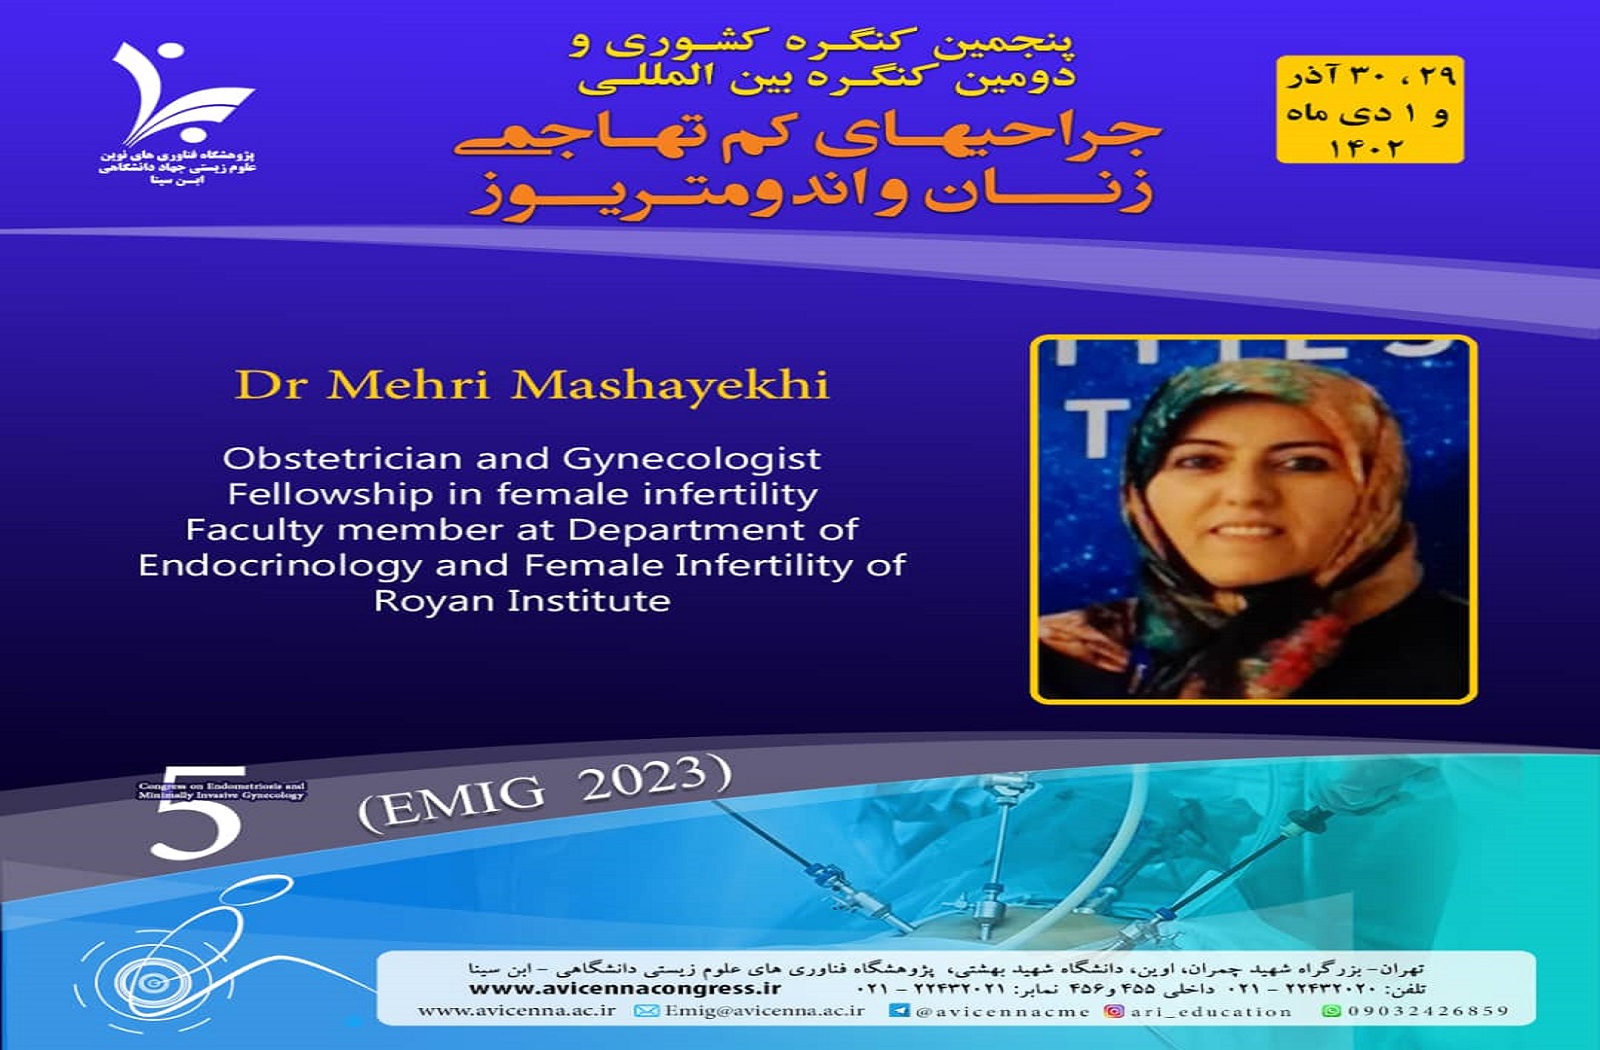 معرفی سرکارخانم دکتر مهری مشایخی به عنوان سخنران و عضو شرکت کننده در کنگره بین المللی جراحی های کم تهاجمی زنان و اندومتریوز